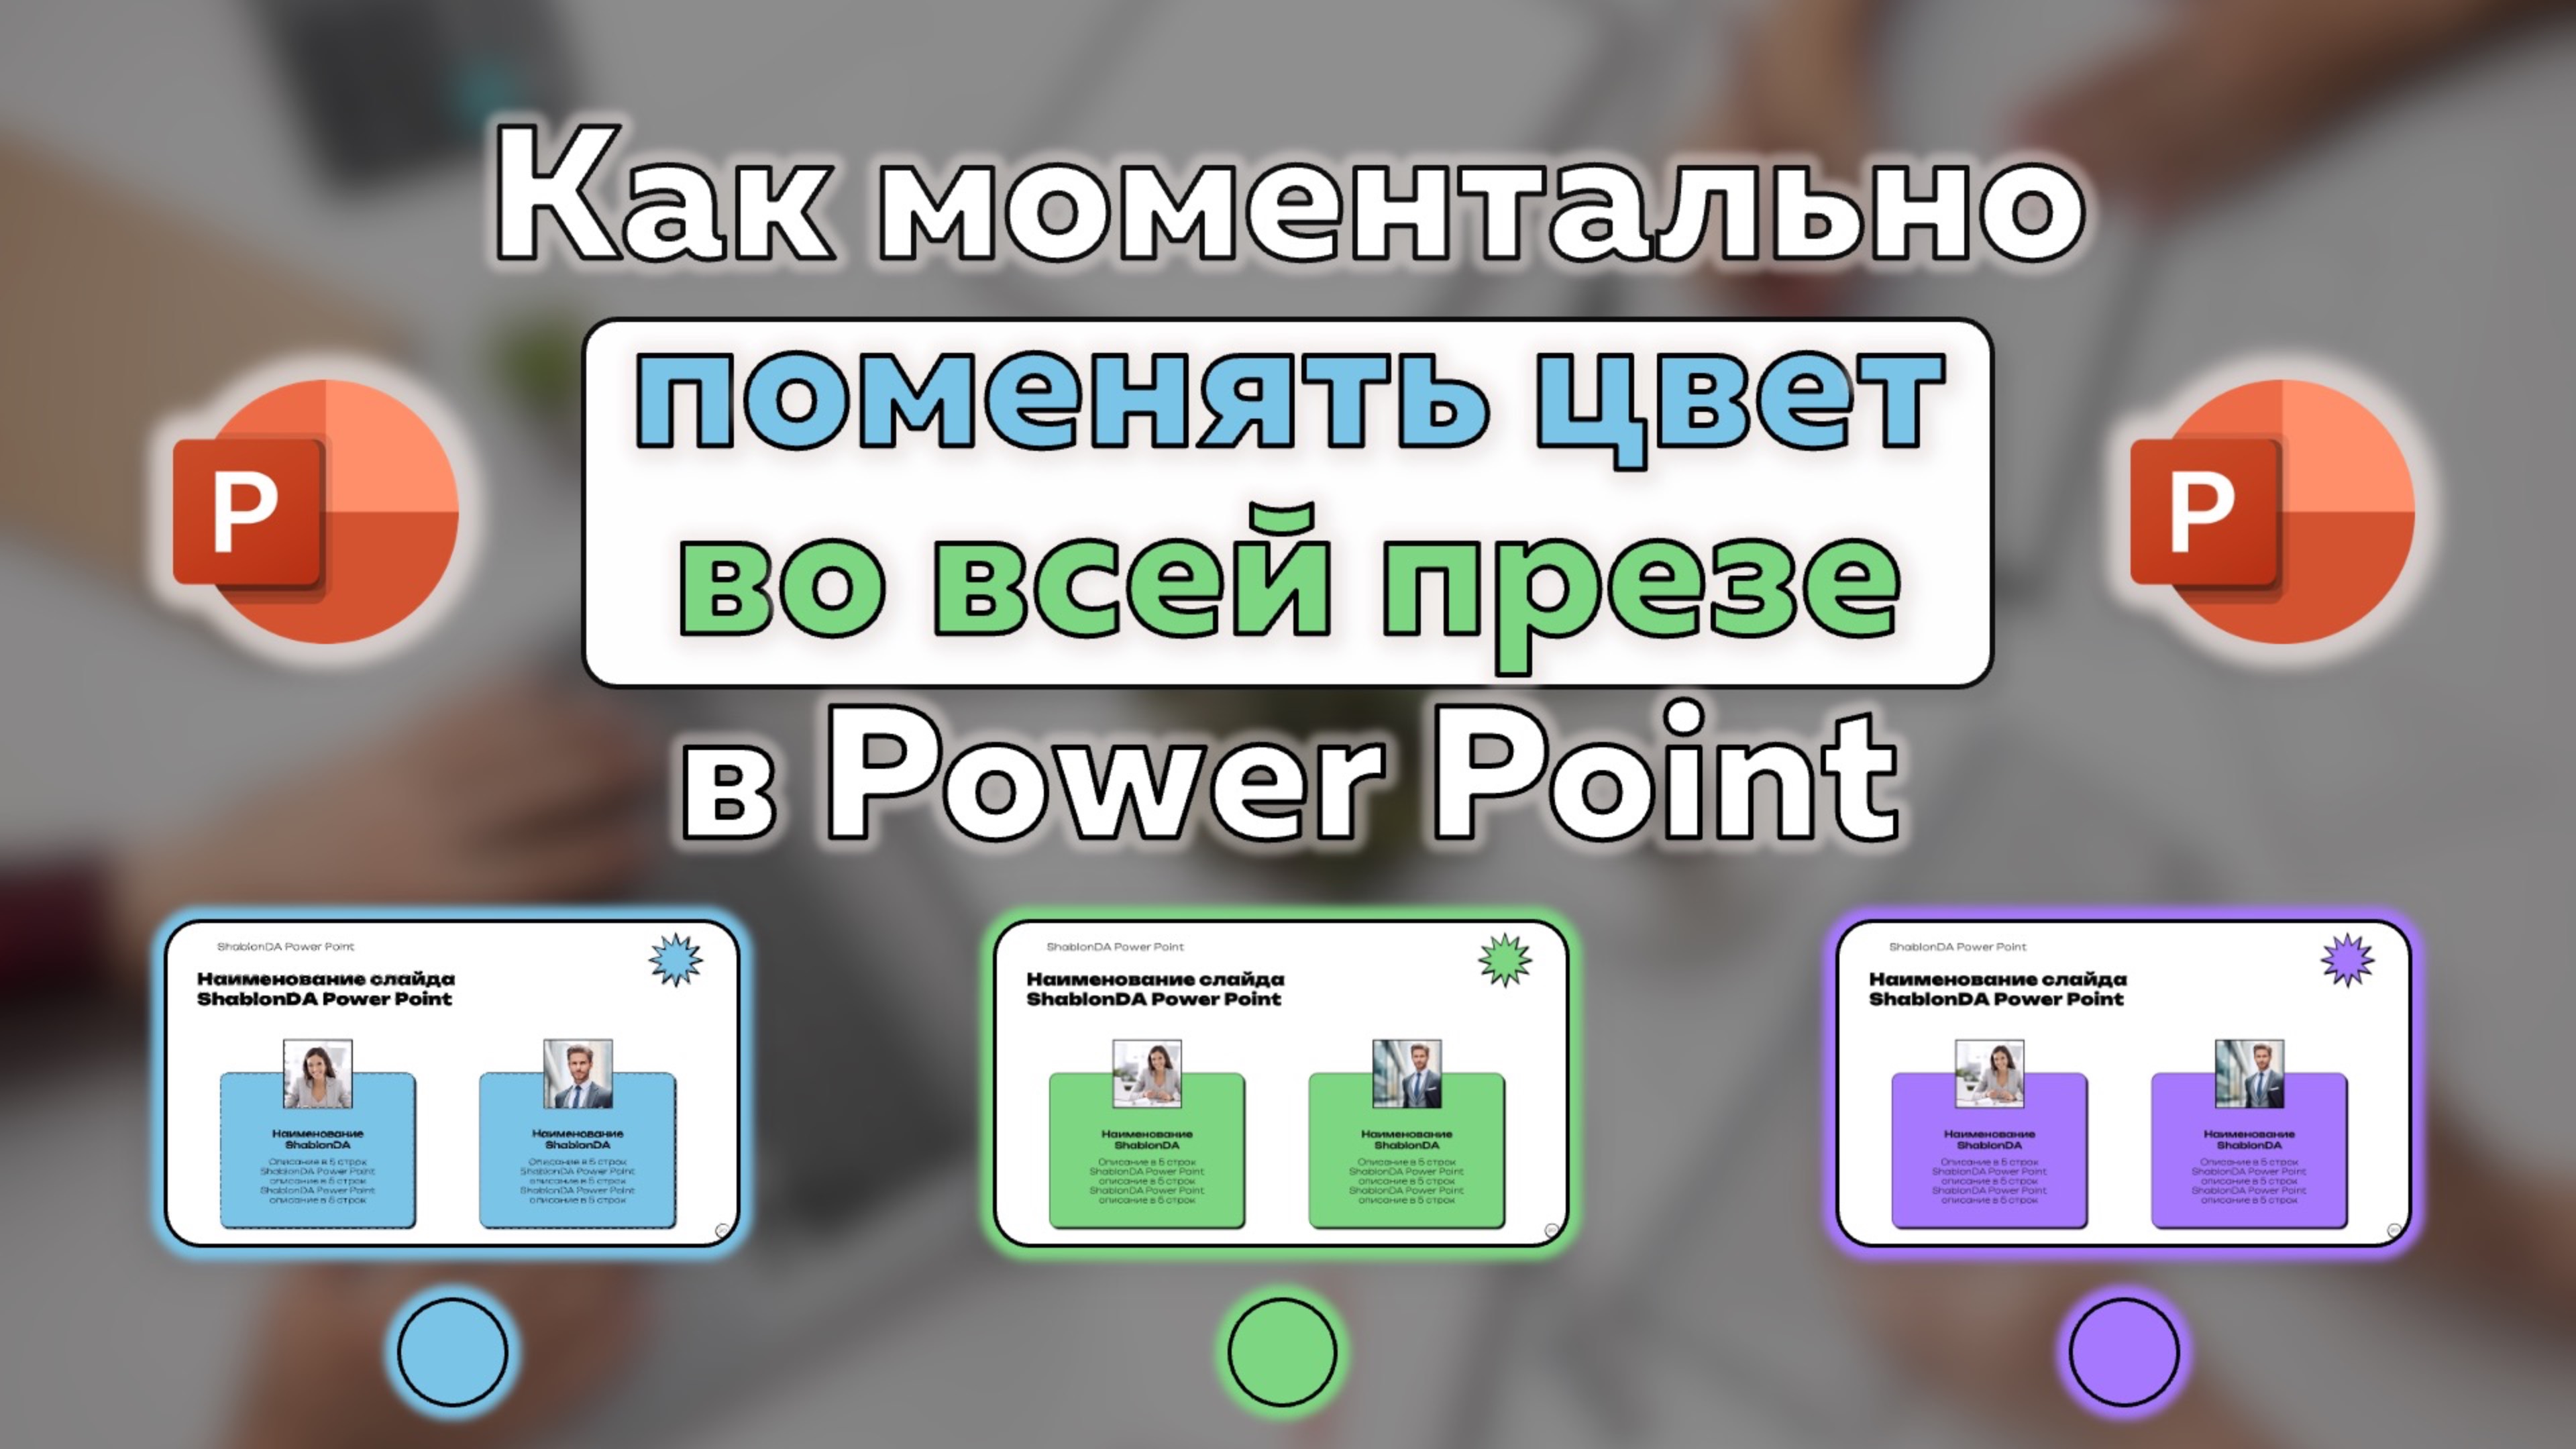 Power Point: Как поменять цвет в презентации за минуту?